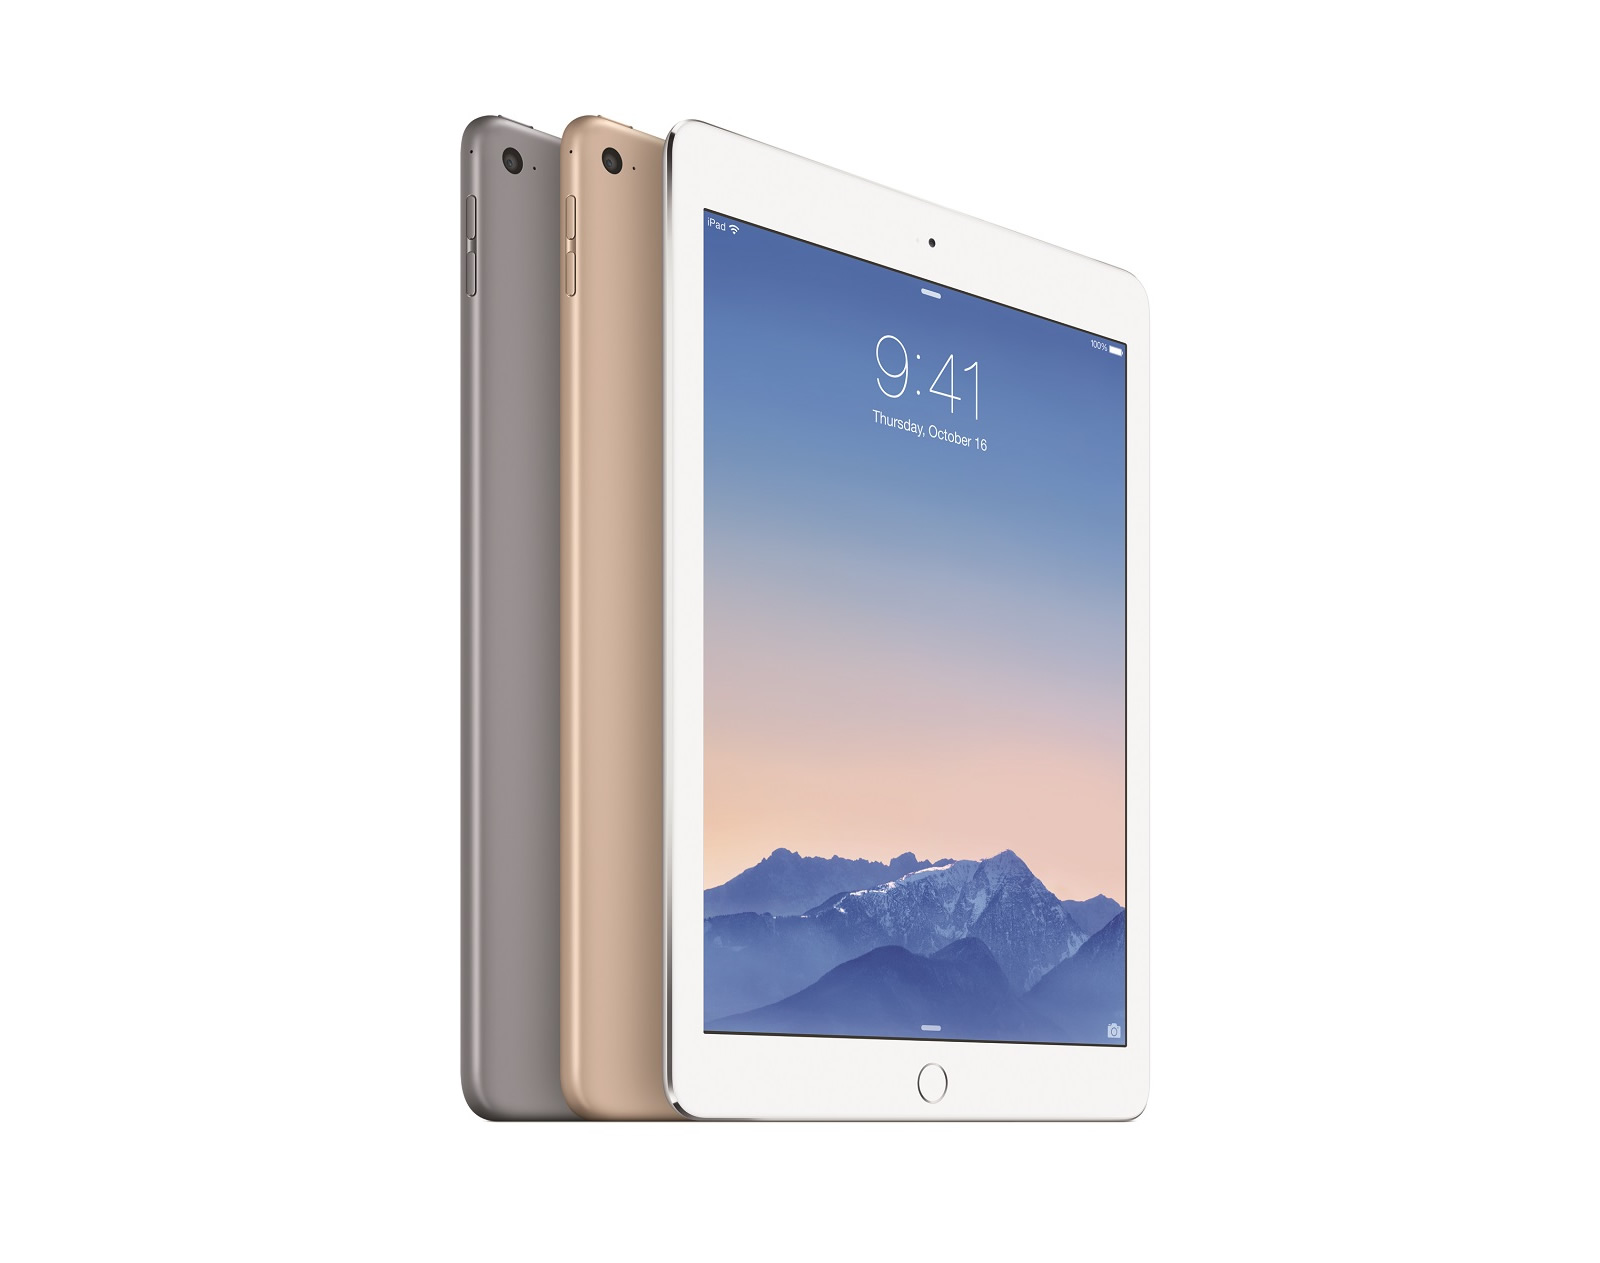 MGHY2TU/A Apple iPad Air 2 64GB Wi-Fi 9,7'' 4G Silver İOS 8 Tablet PC